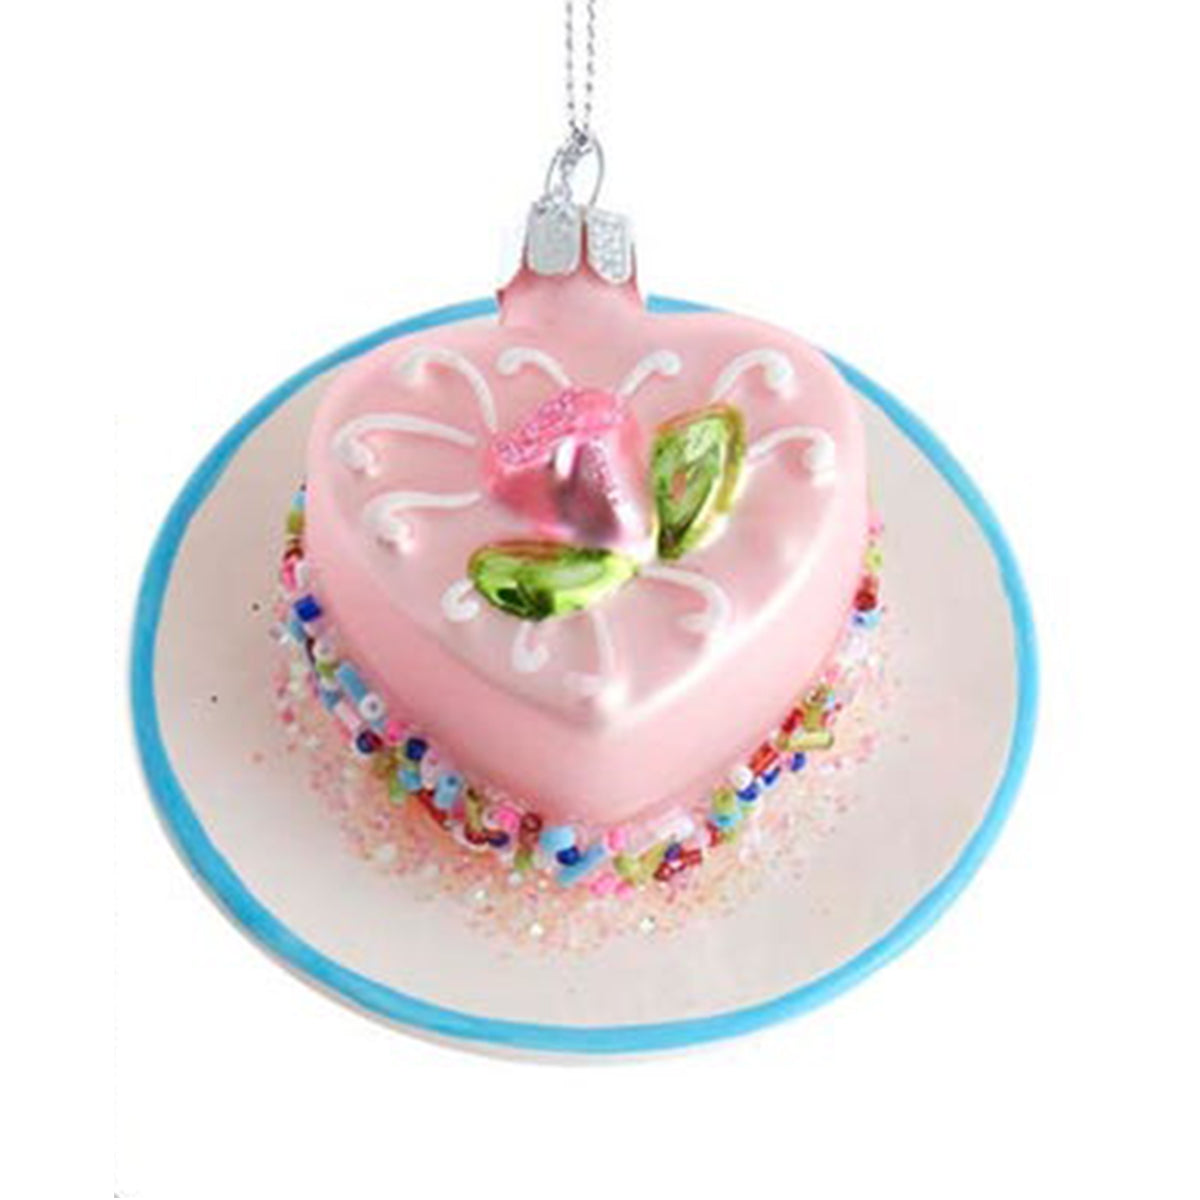 Kurt Adler 3.25" Miniature Glass Heart Cake